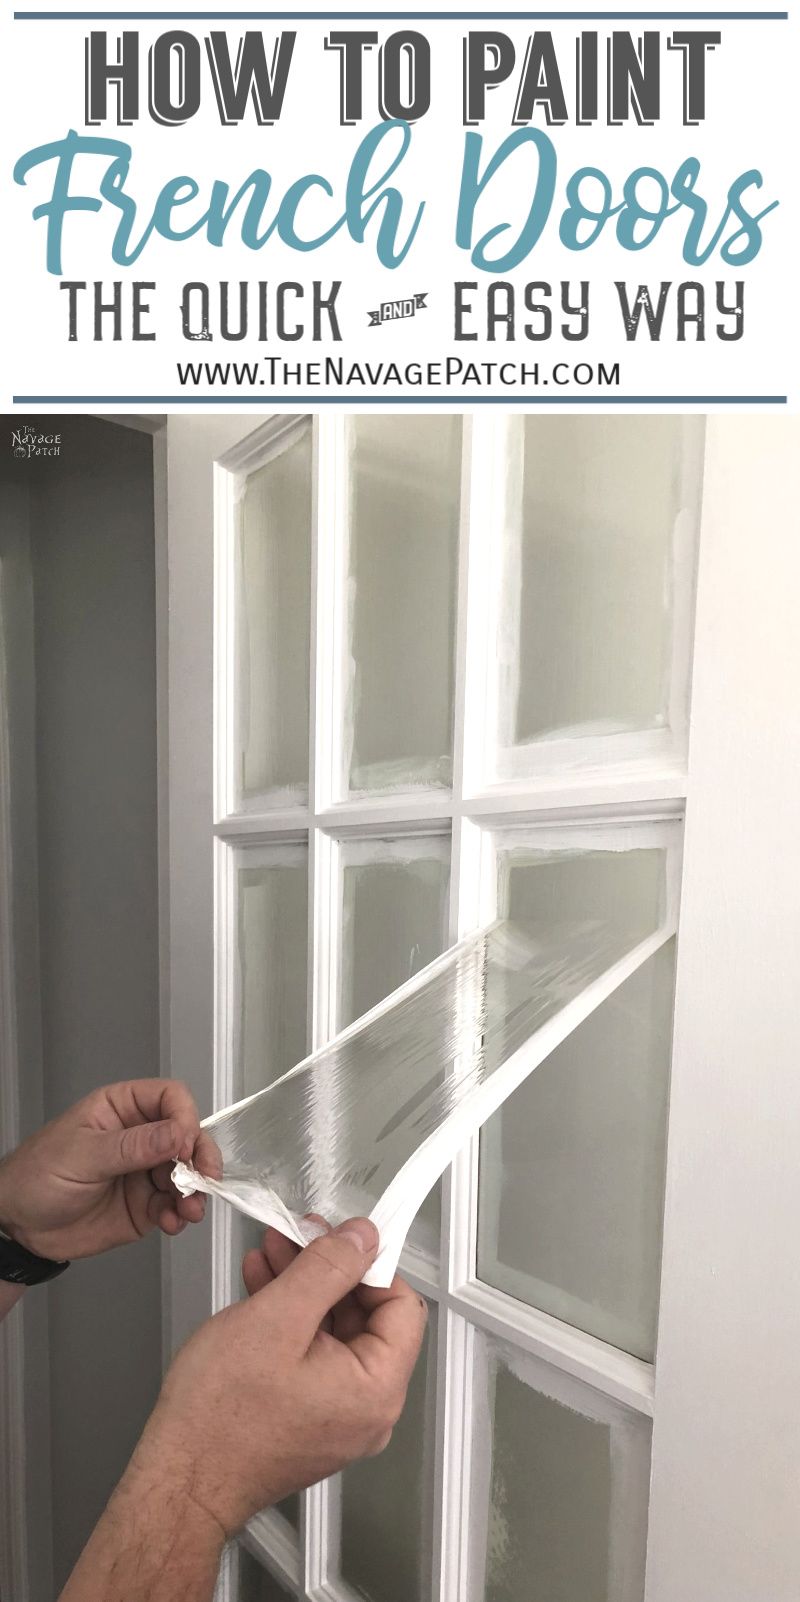 How to paint a door 